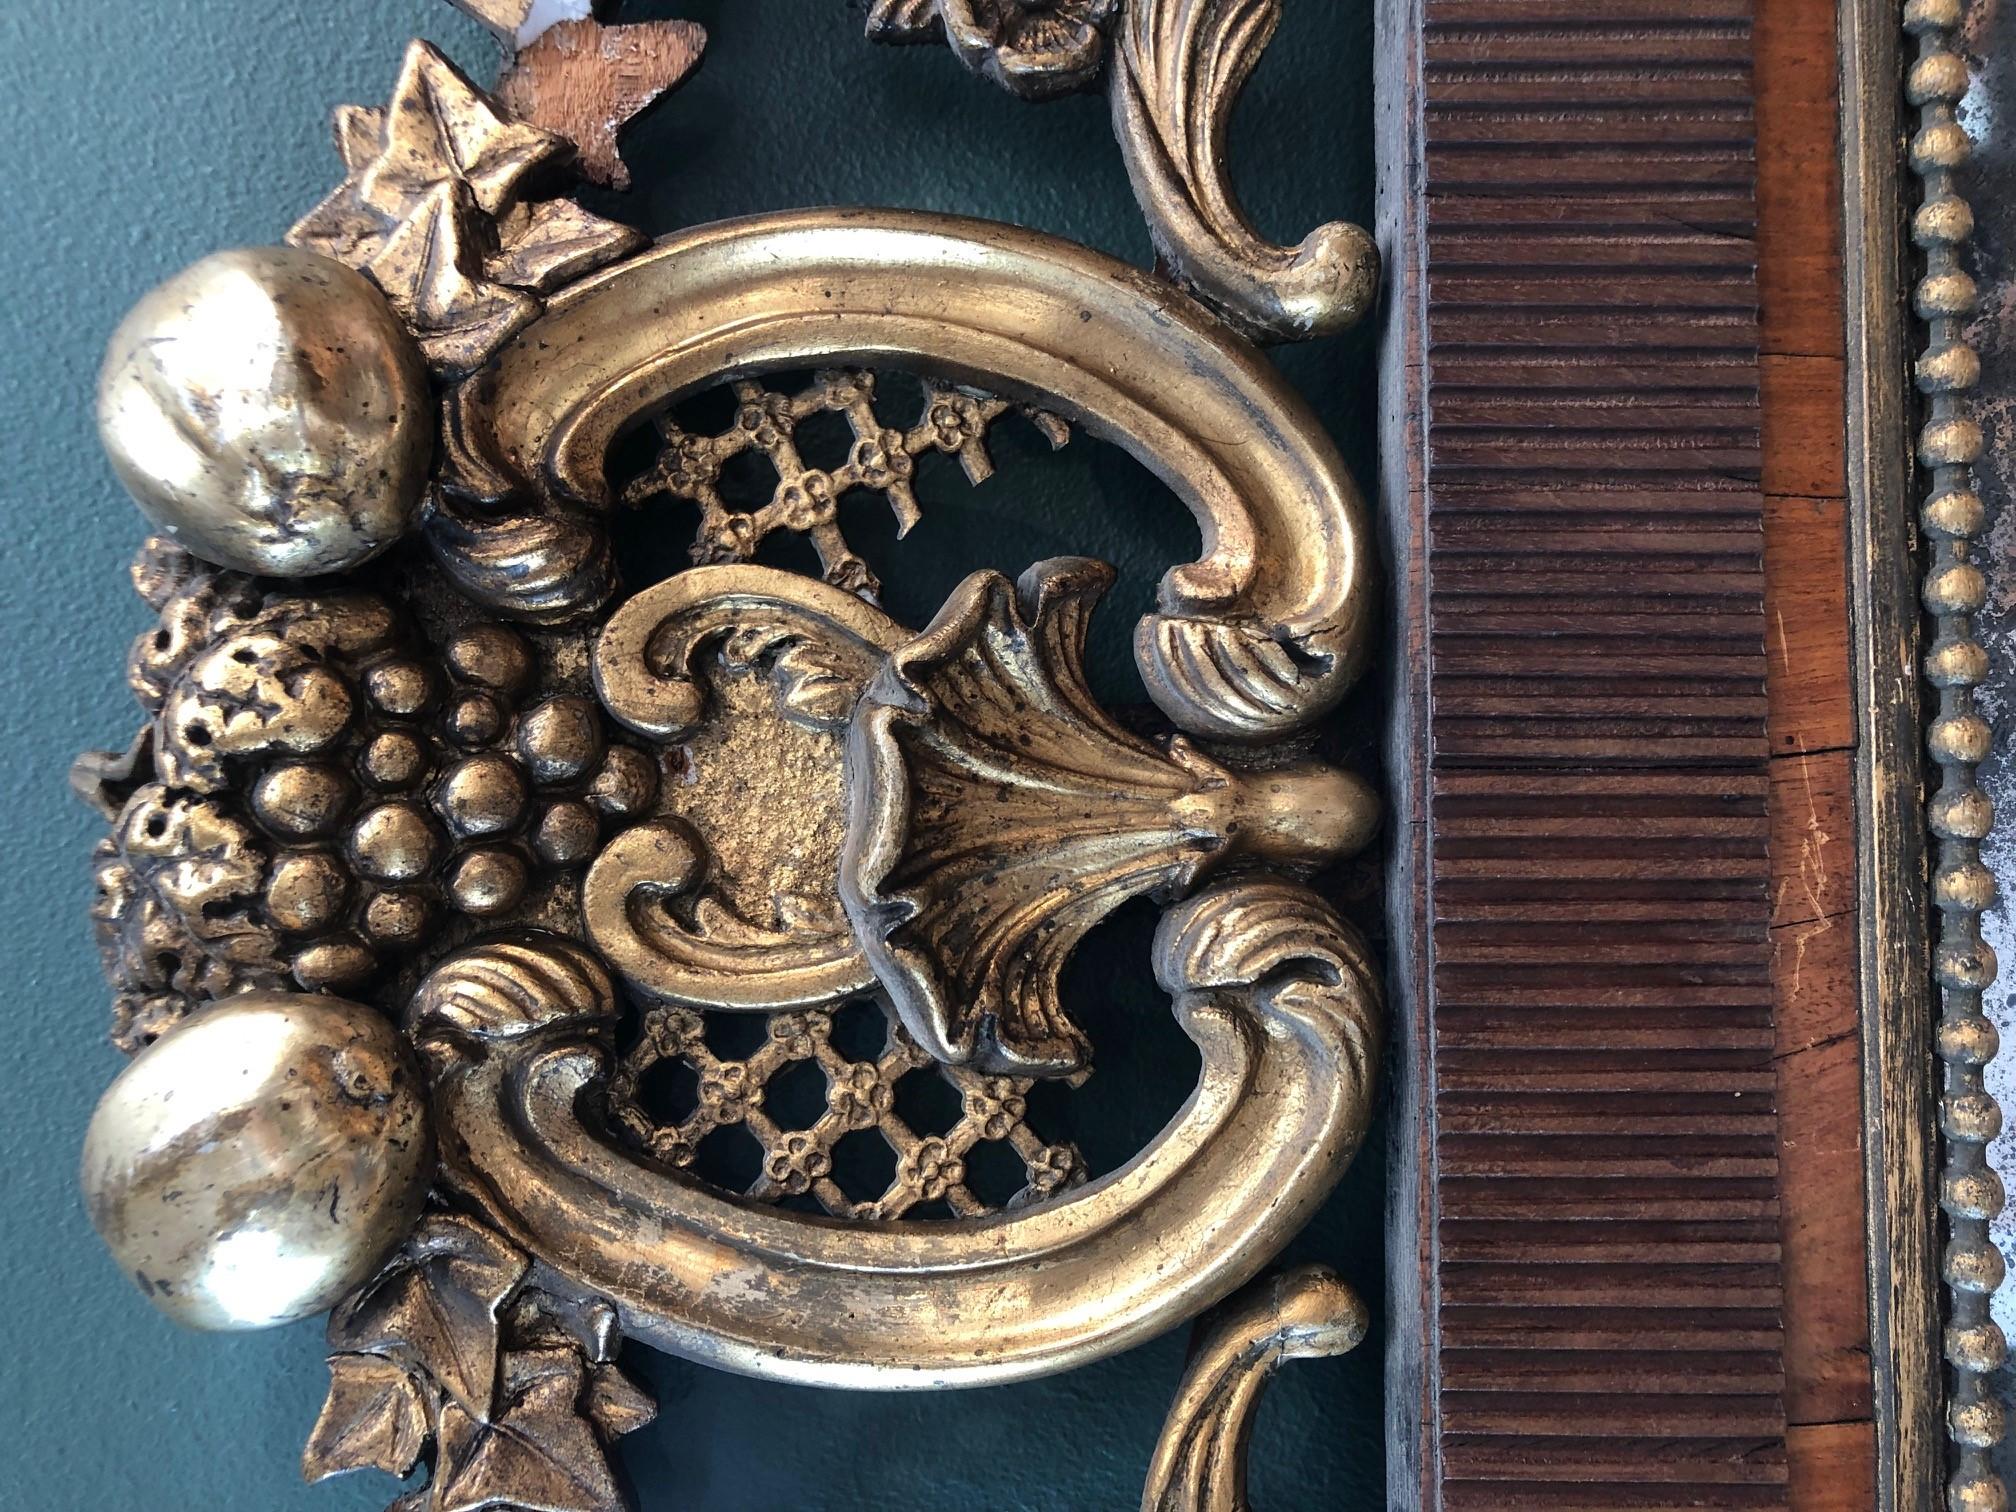 Miroir français de style Louis XVI avec cadre en acajou et verre de miroir au mercure d'origine. Par miroir perlé, bordure en bois plaqué. Le miroir est surmonté d'une sculpture en bois représentant des feuilles et des fruits avec dorure.
France,